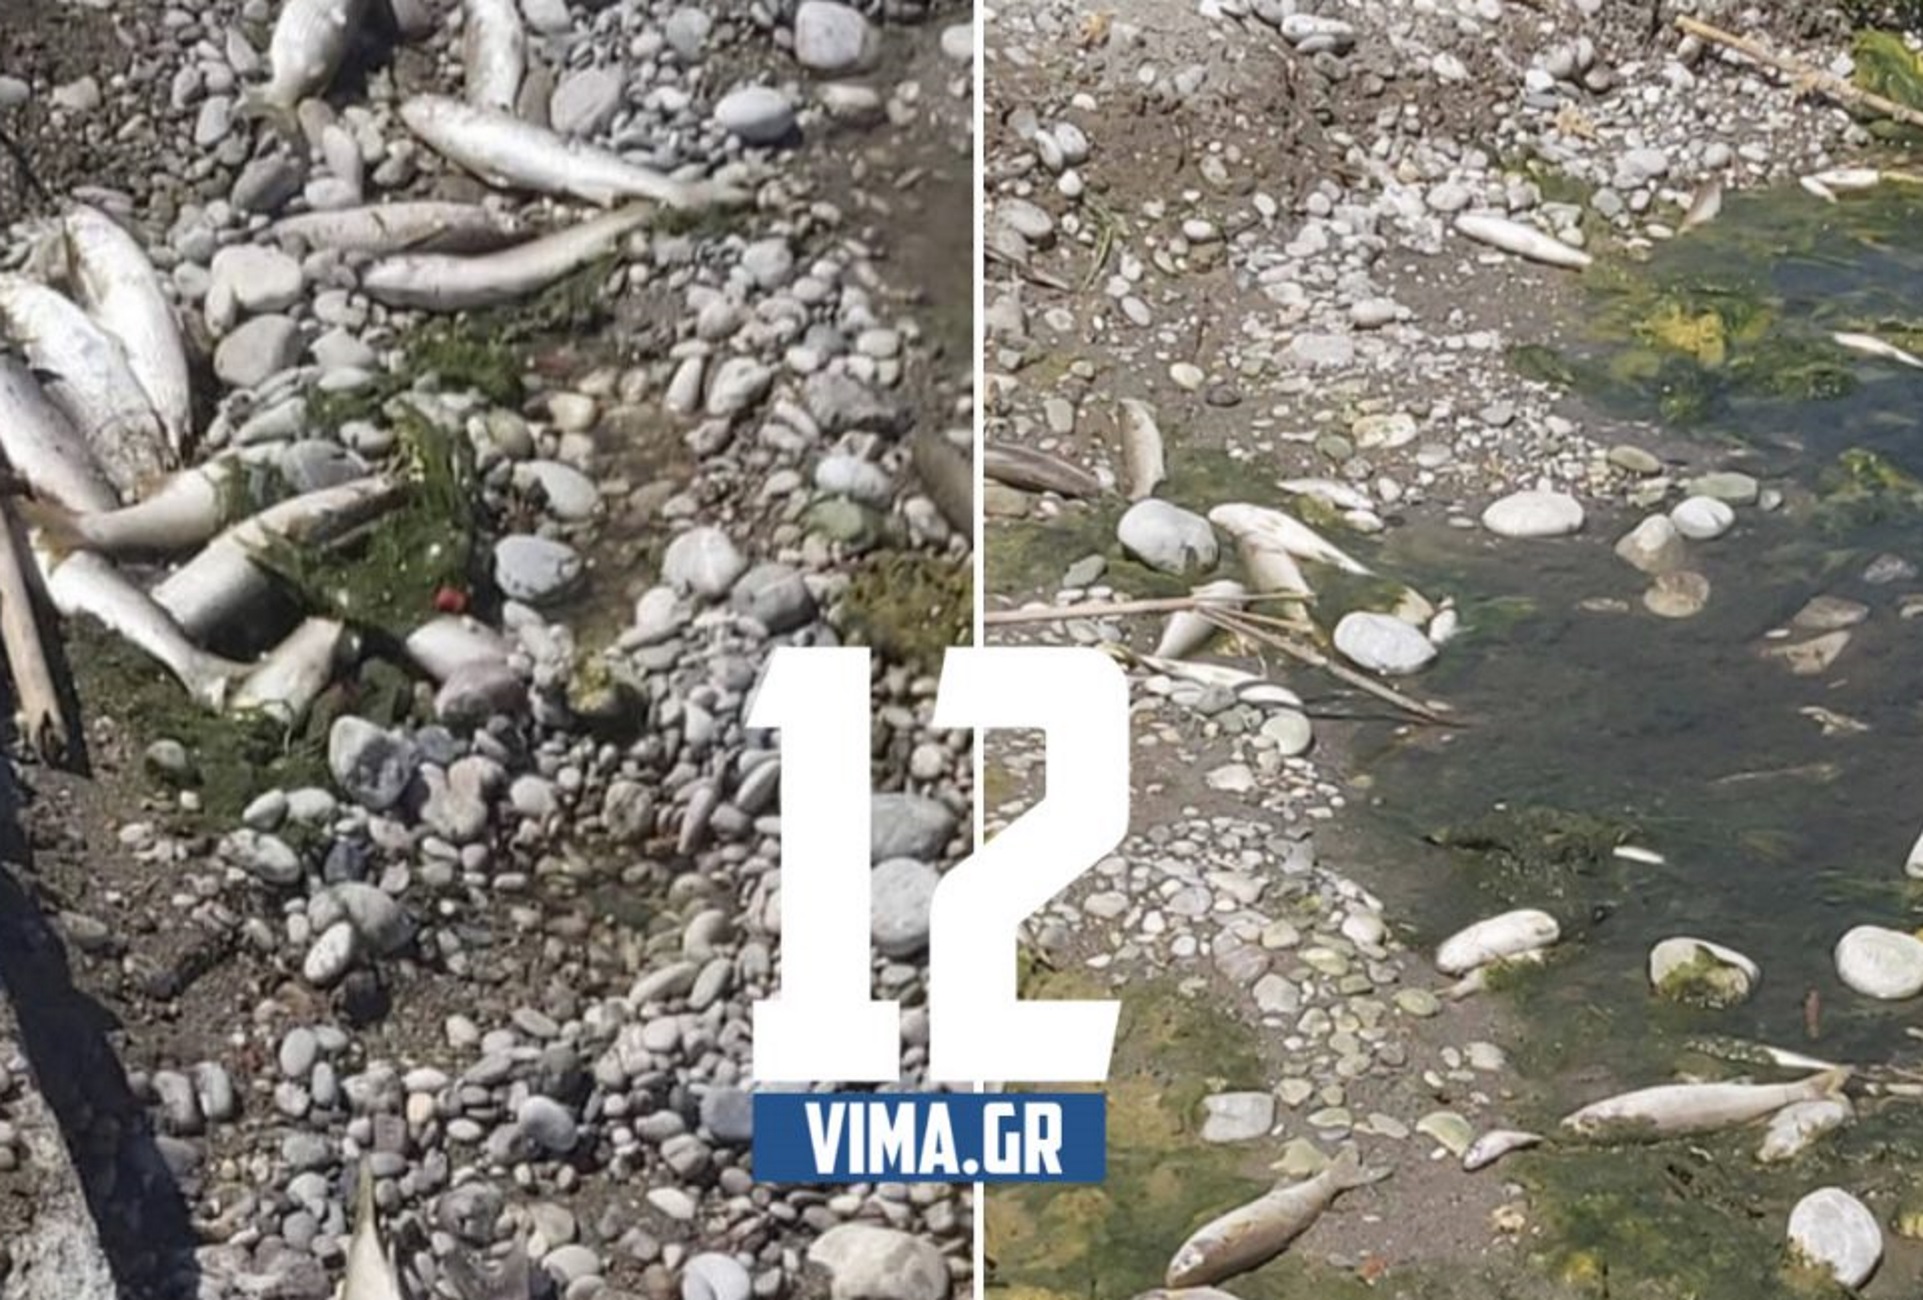 Ρόδος: Γέμισε νεκρά ψάρια η όχθη του ποταμού! Ελέγχουν το νερό για να διαπιστώσουν τι συνέβη (Βίντεο)